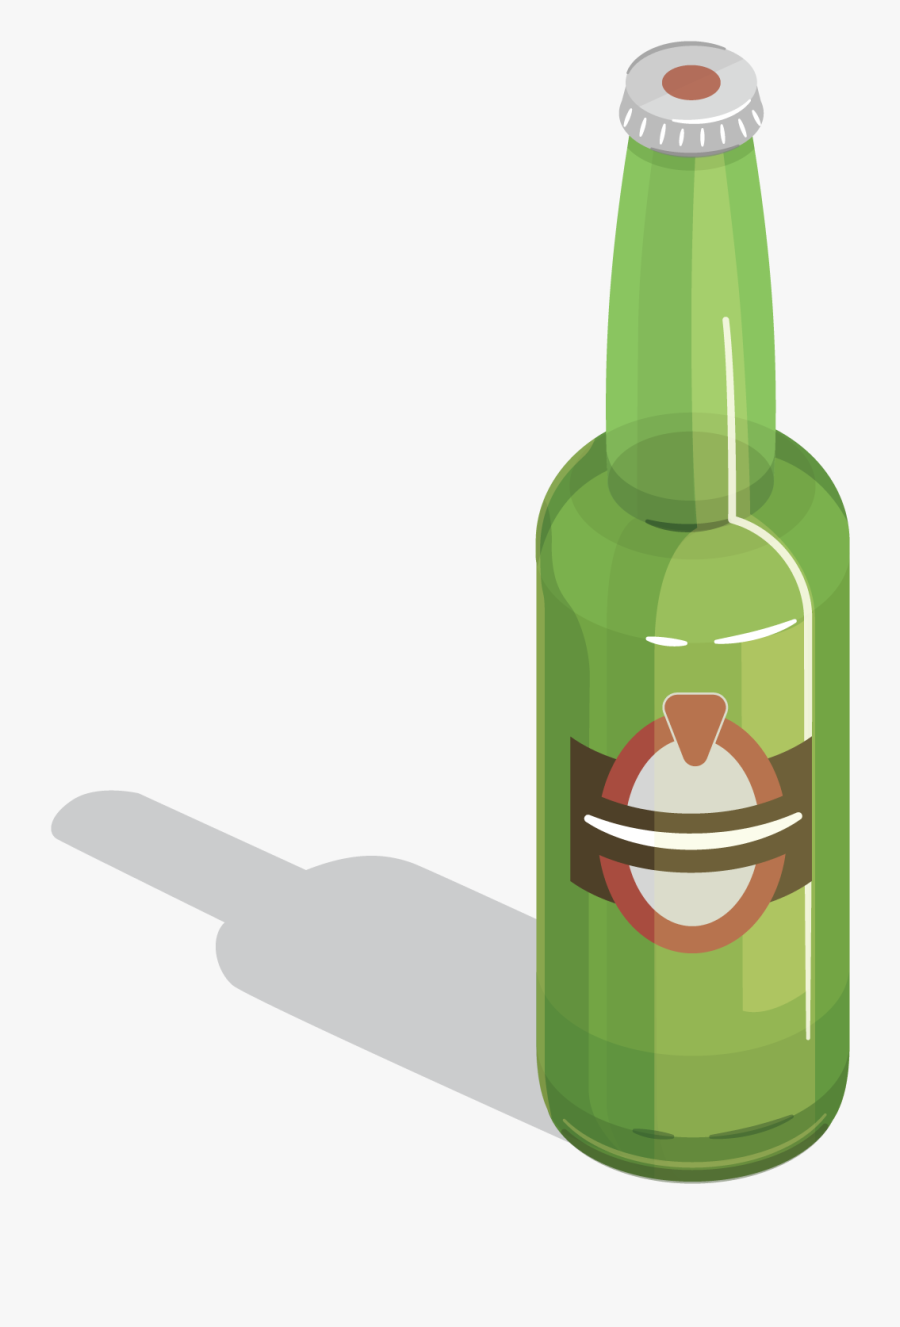 Beer Bottle Wine Glass - Beer Bottle Illustration Png, Transparent Clipart